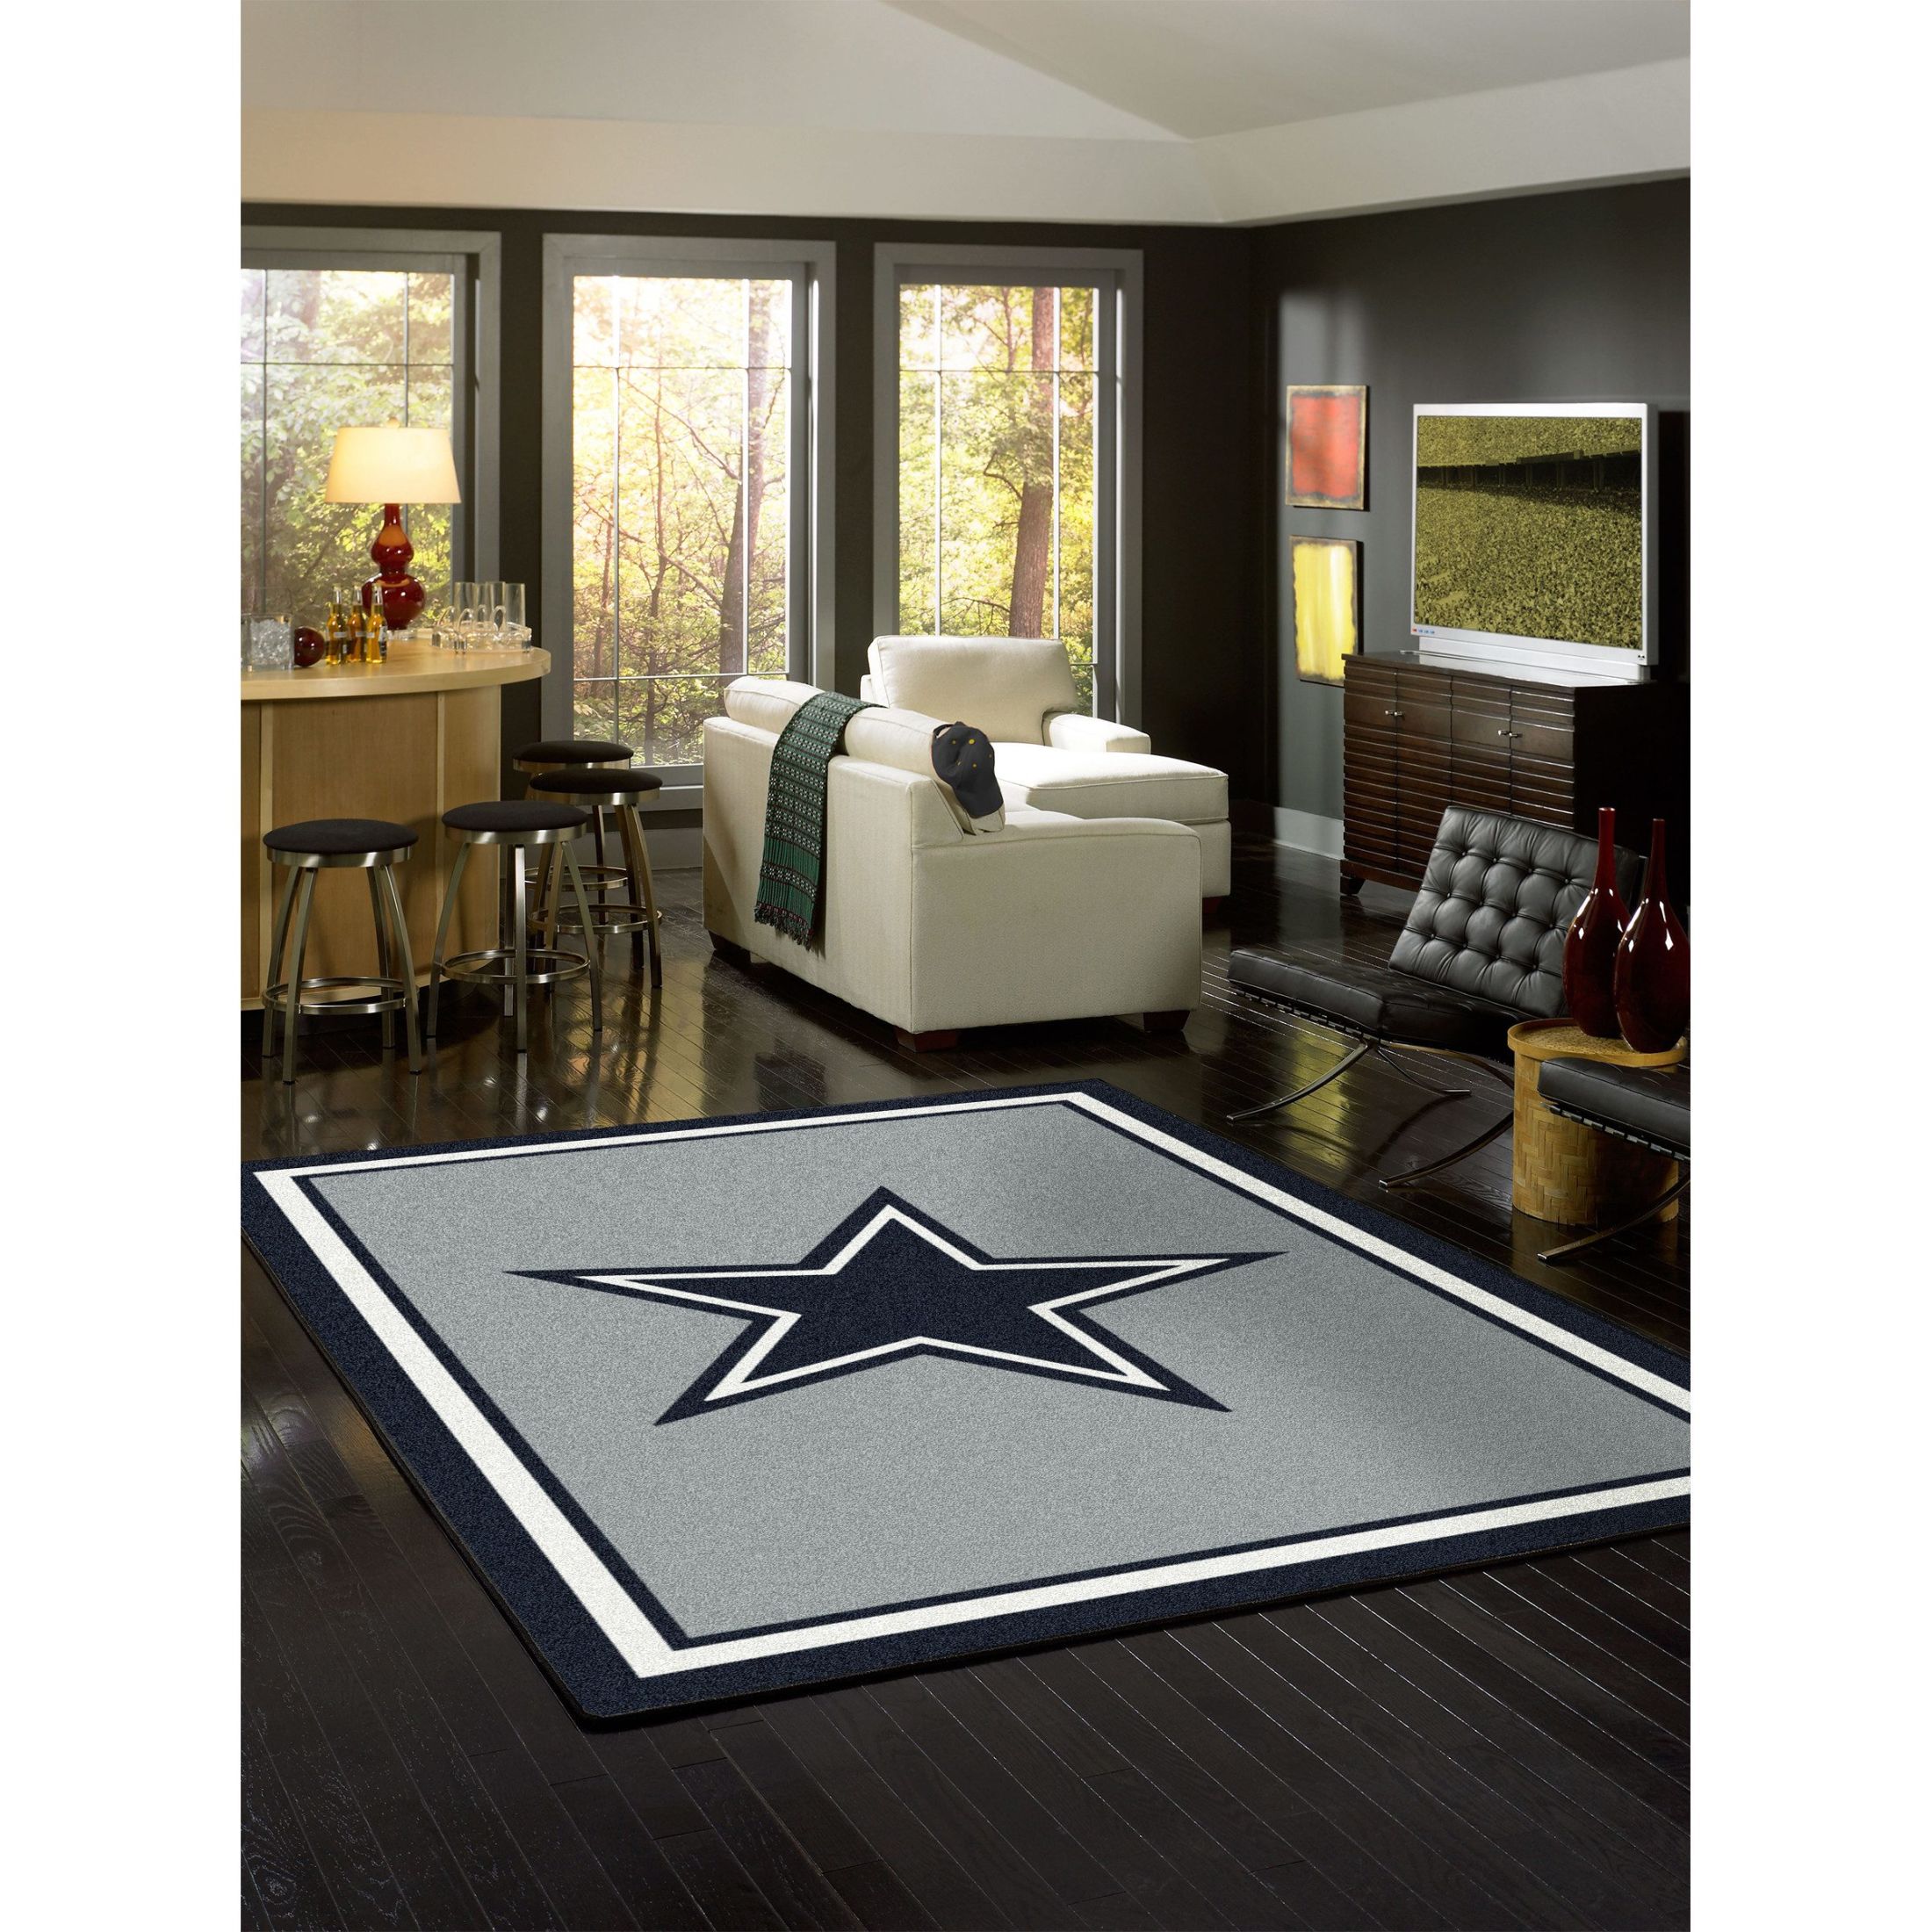 Dallas Cowboys Team Colors Doormat